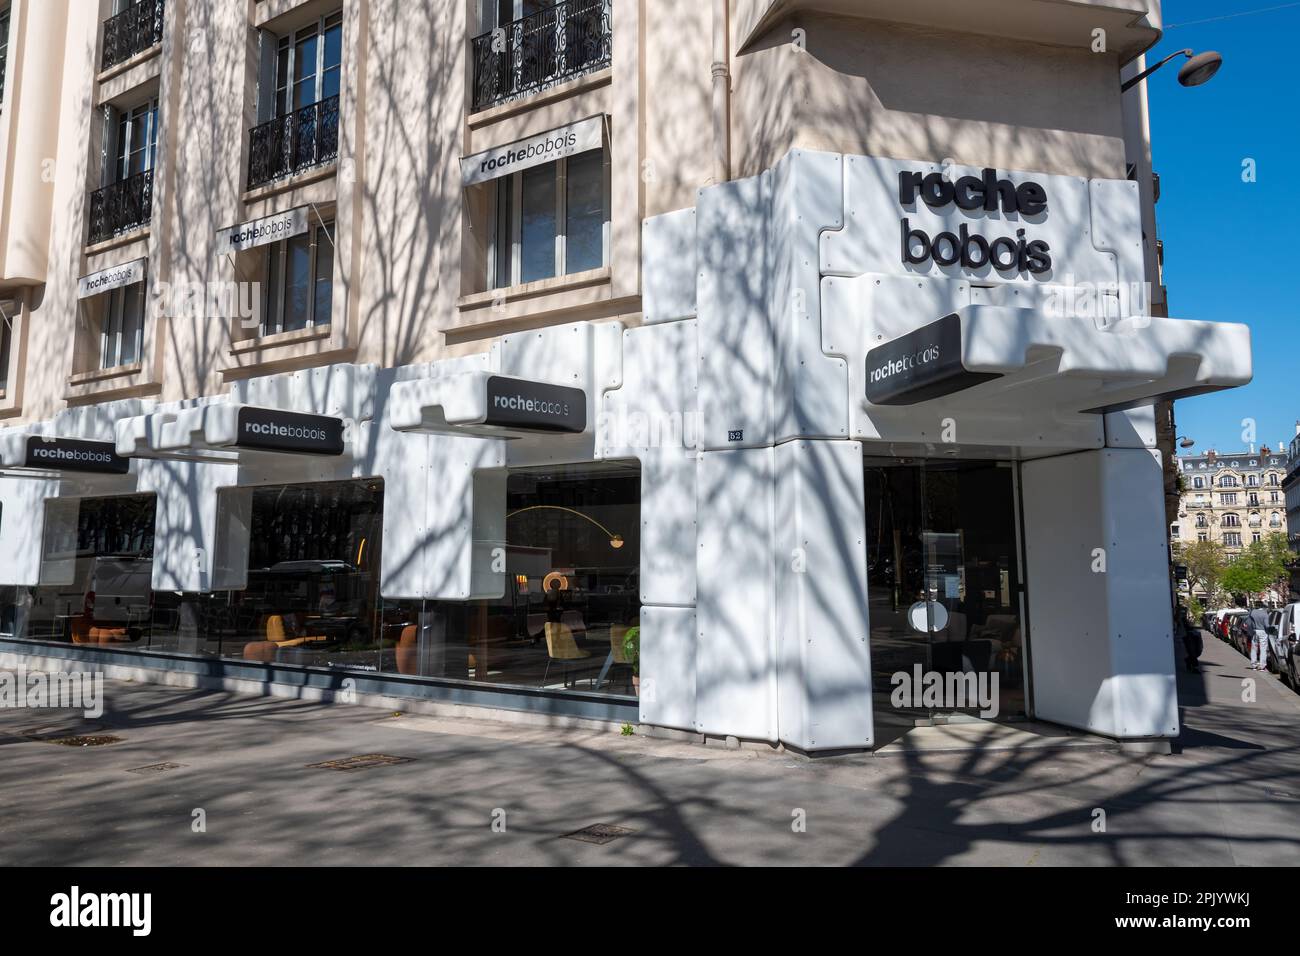 Außenansicht eines Roche Bobois Stores, eines internationalen französischen Unternehmens, das Möbel und Haushaltszubehör entwirft und vertreibt Stockfoto